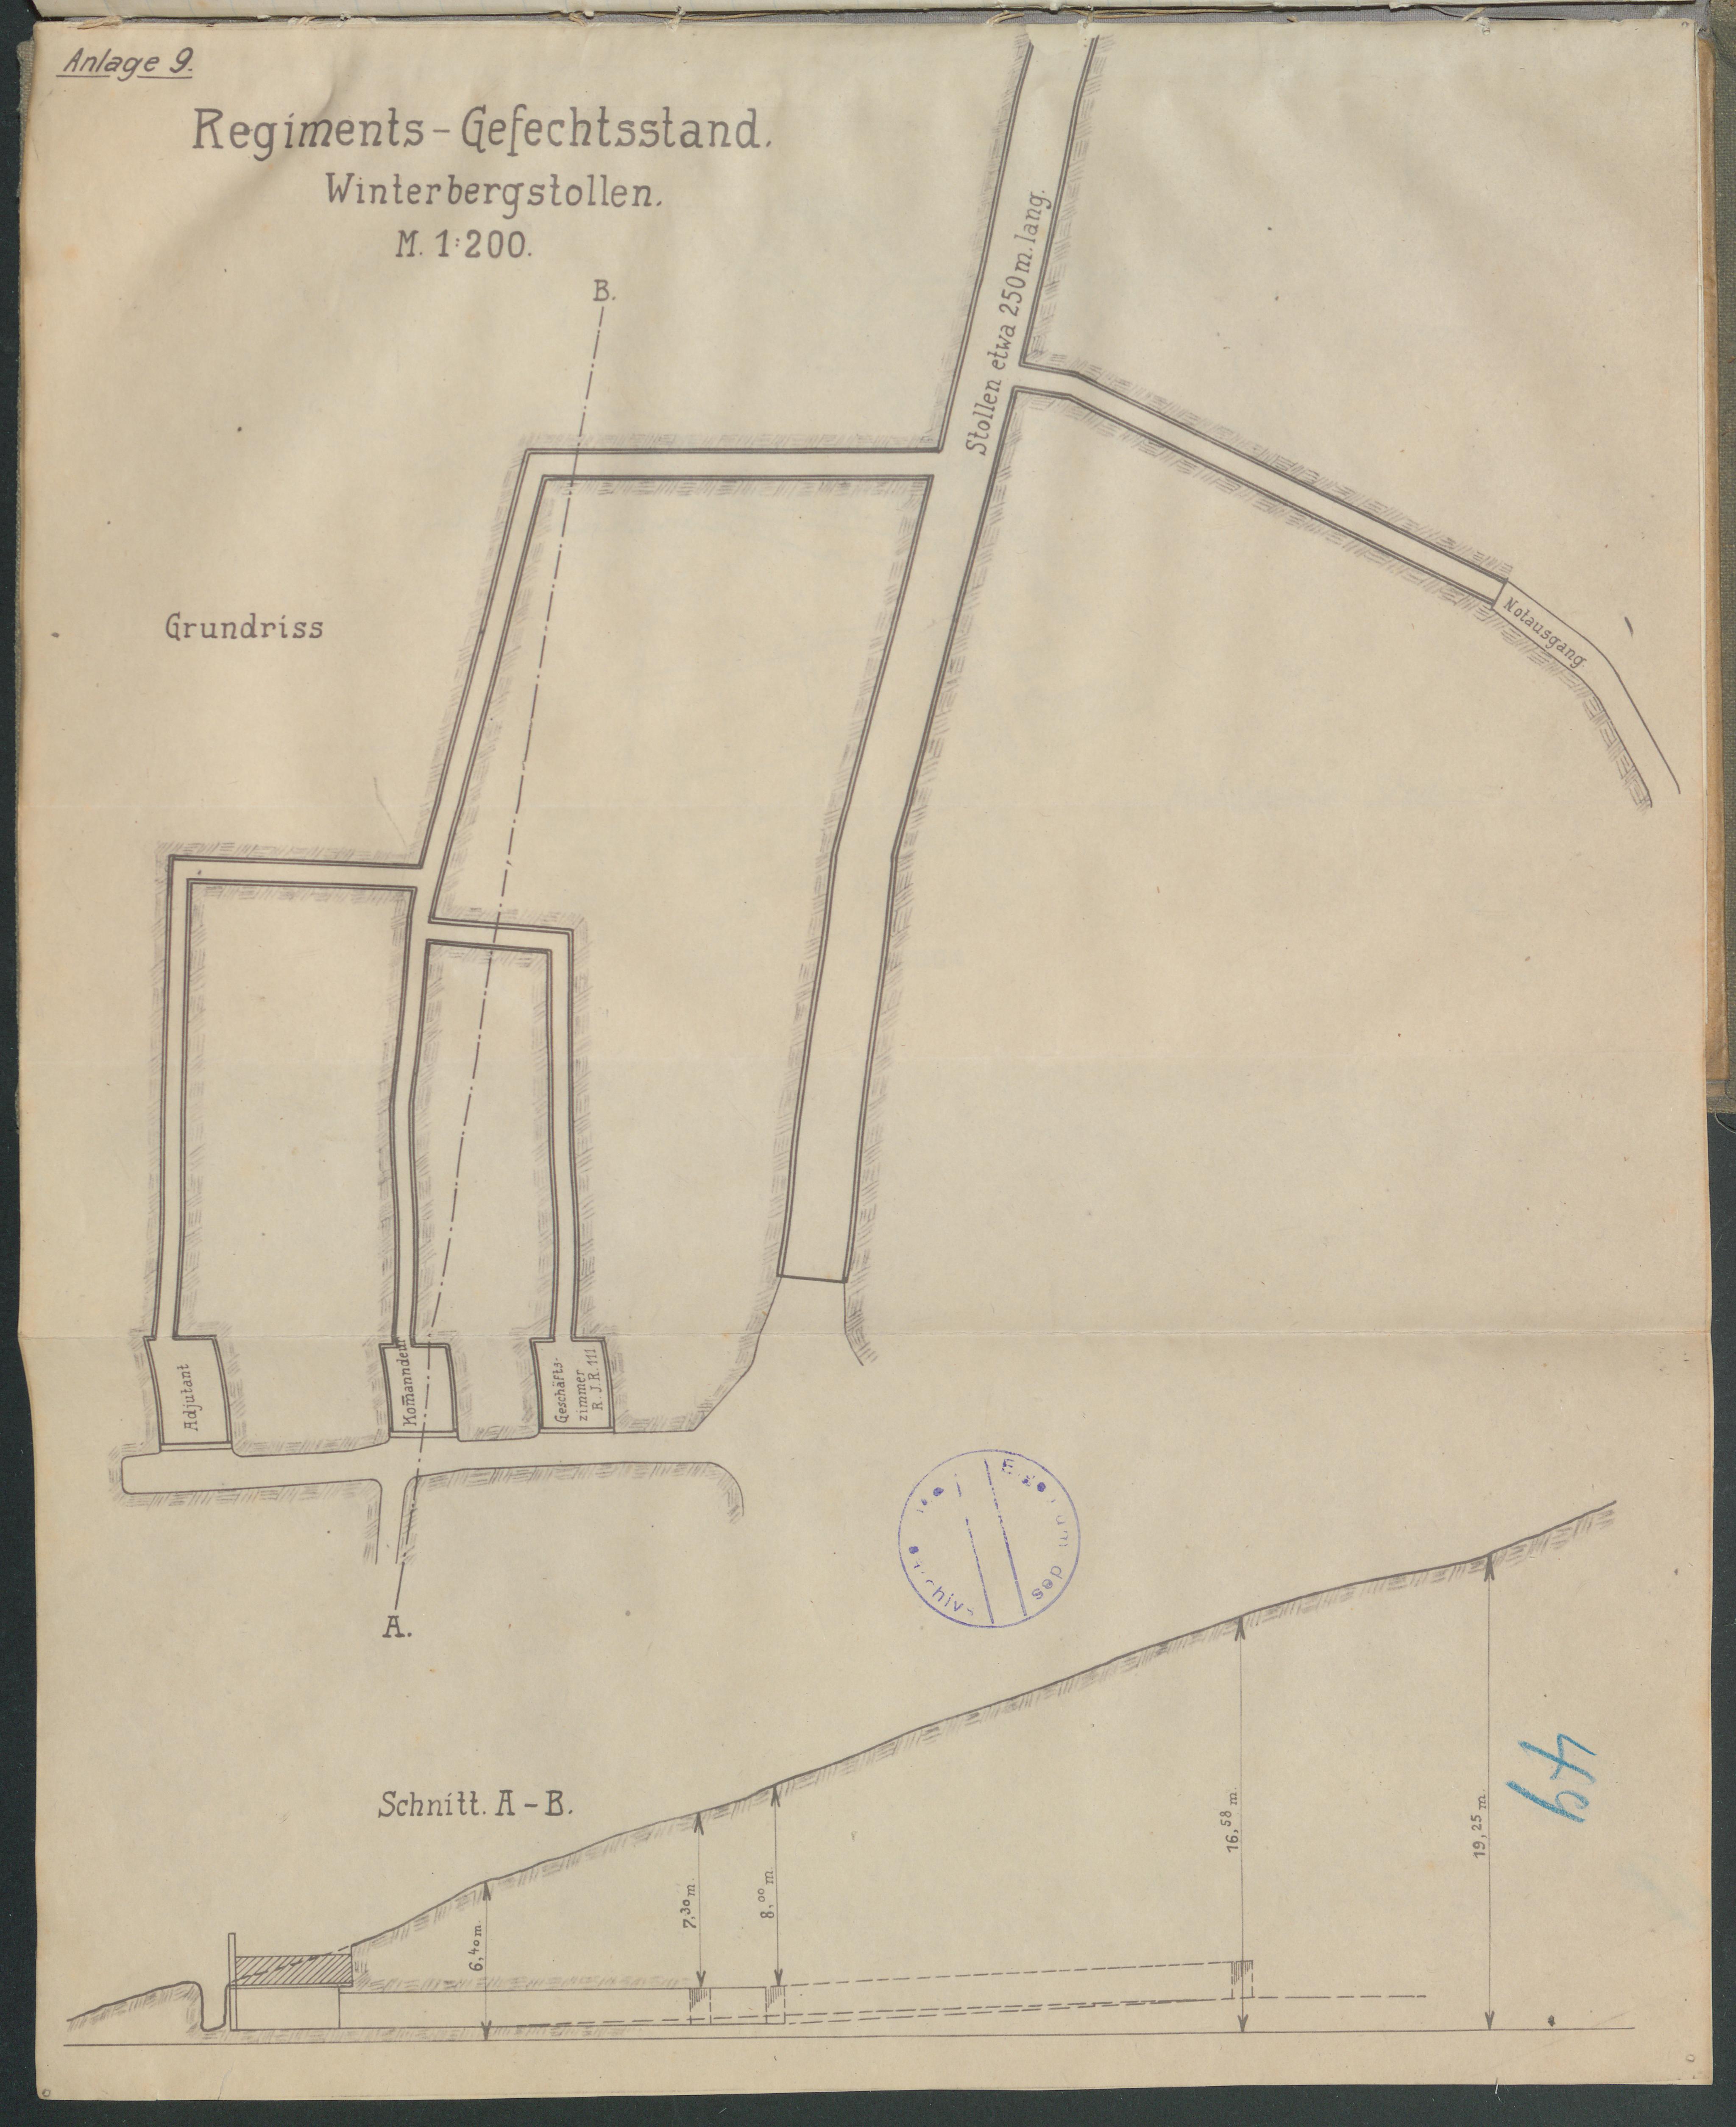  Plan des Regimentsgefechtsstands im Winterberg-Tunnel (Quelle: Landesarchiv BW, GLAK 456 F 55/336, Anlage 9)